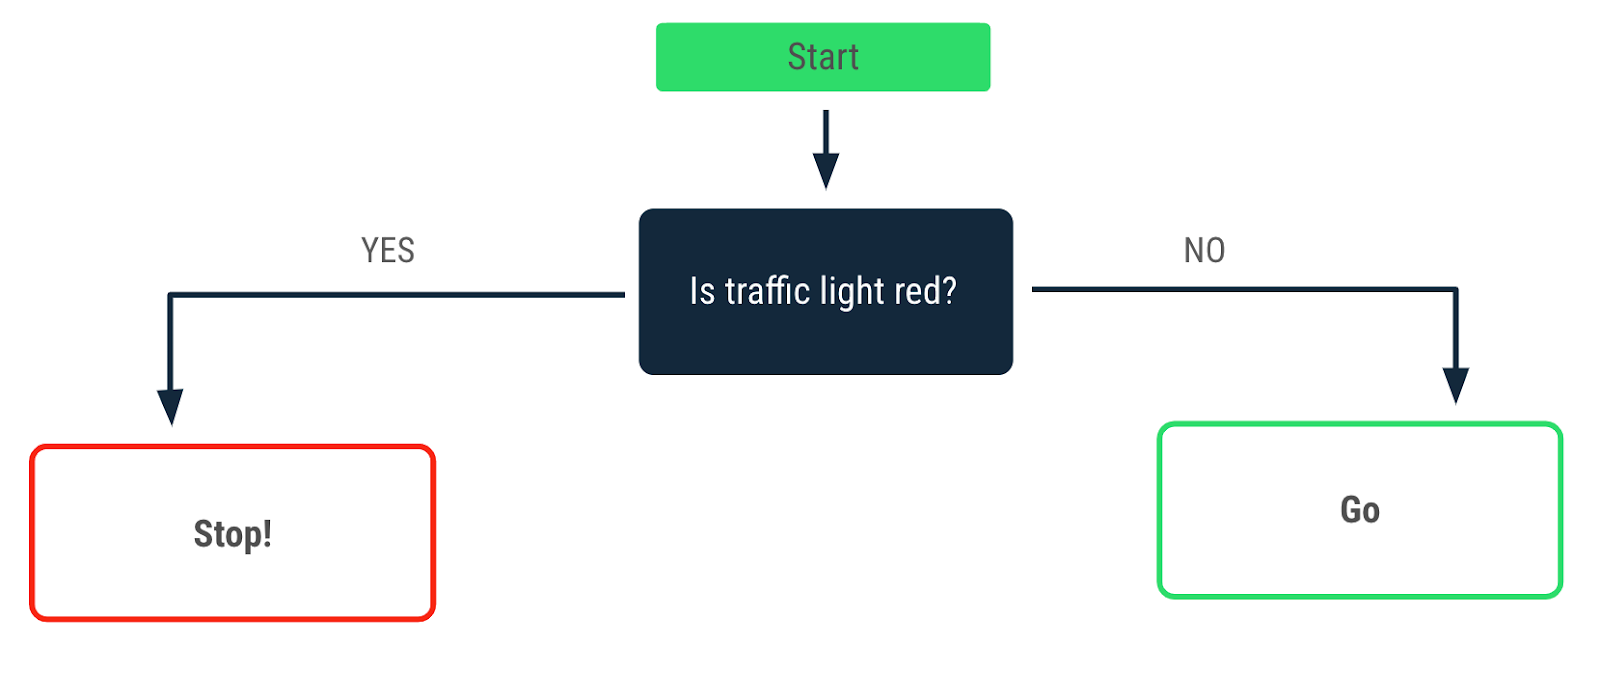 Sơ đồ quy trình mô tả một quyết định được đưa ra khi gặp đèn giao thông có màu đỏ. Mũi tên yes (có) trỏ đến thông báo "Dừng"!. Mũi tên no (không) trỏ đến thông báo "Tiếp tục"!.